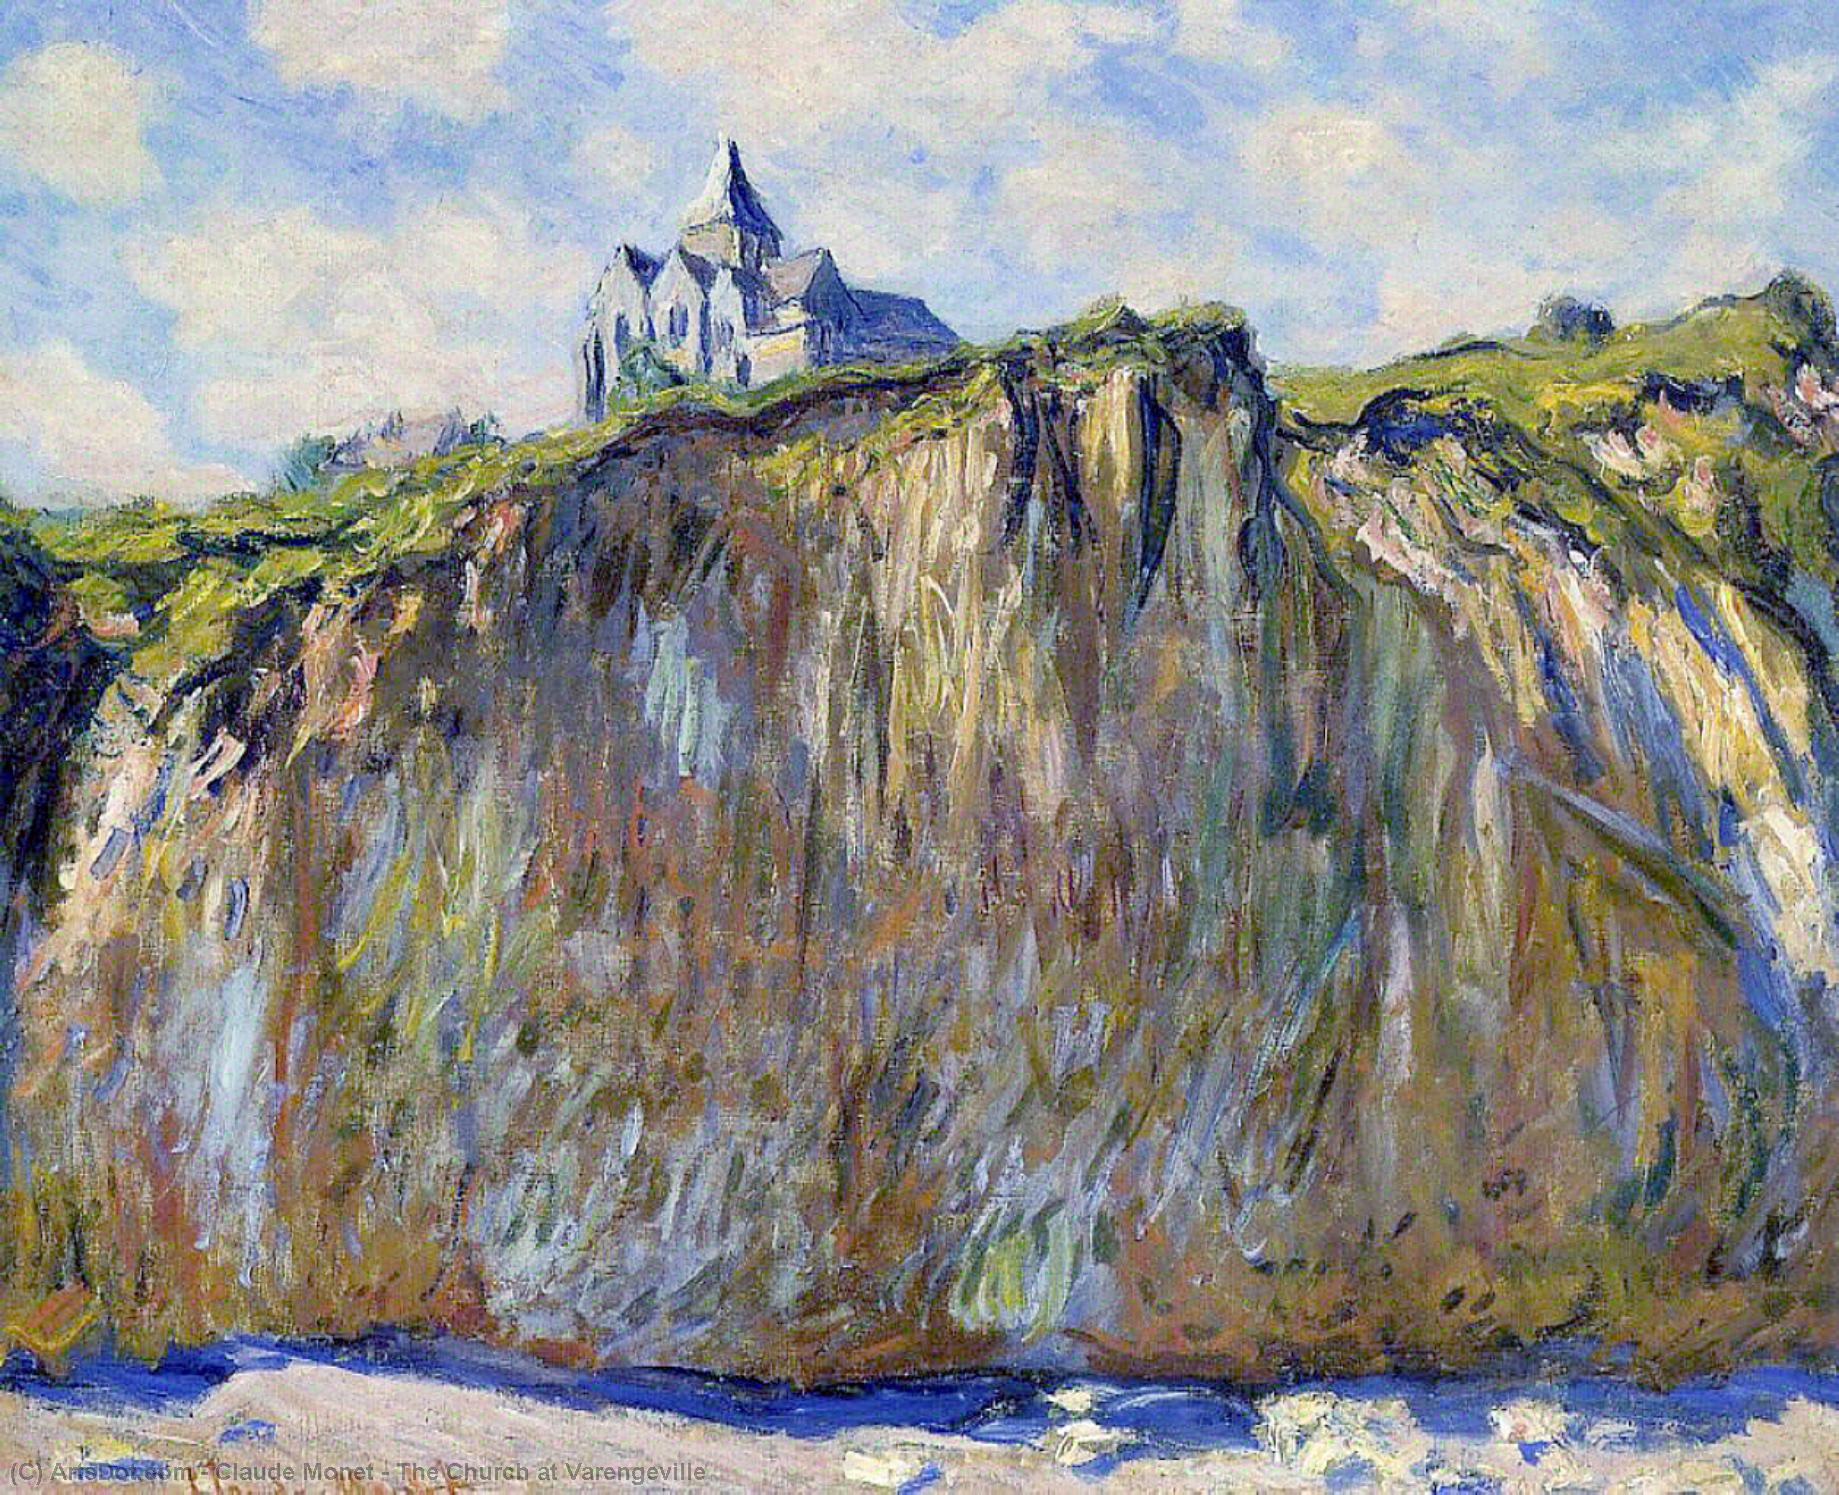 WikiOO.org - אנציקלופדיה לאמנויות יפות - ציור, יצירות אמנות Claude Monet - The Church at Varengeville